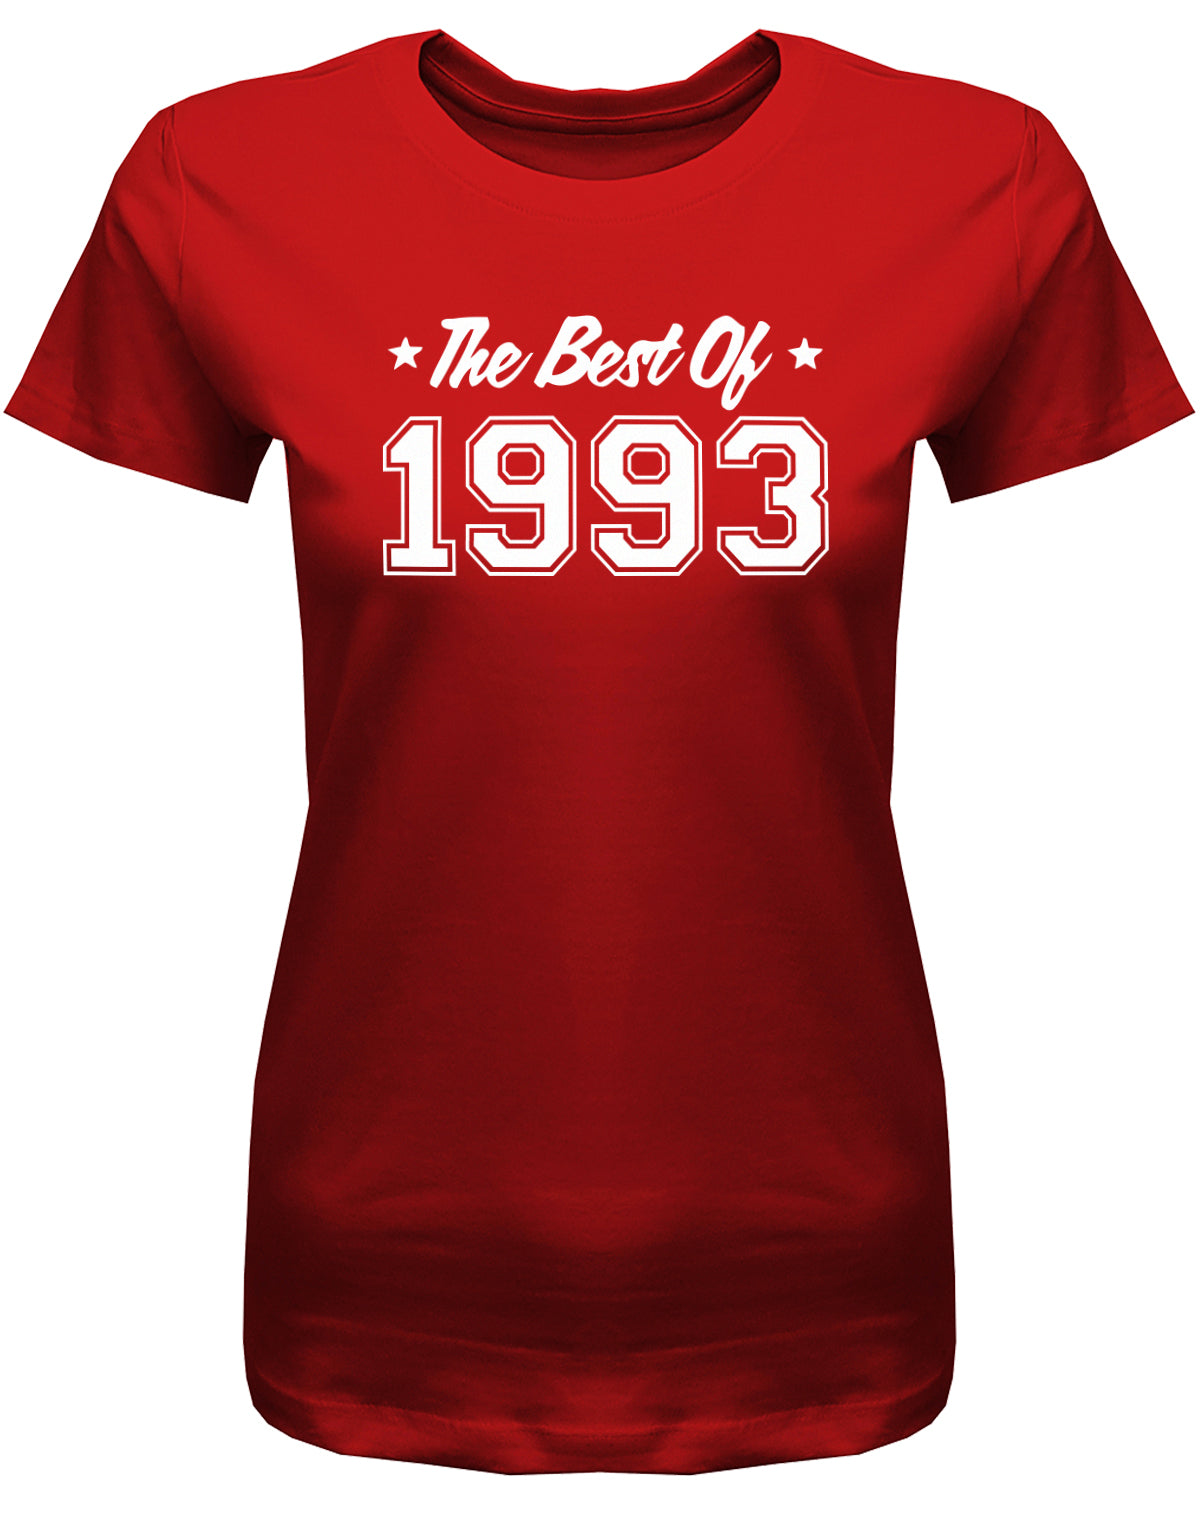 Lustiges T-Shirt zum 30. Geburtstag für die Frau Bedruckt mit: The best of 1993 ✓ Geschenk zum 30 geburtstag Frau ✓ 1993 geburtstag Frau ✓ 30 Geburtstag tshirt ✓ shirt geburtstag 30 Rot